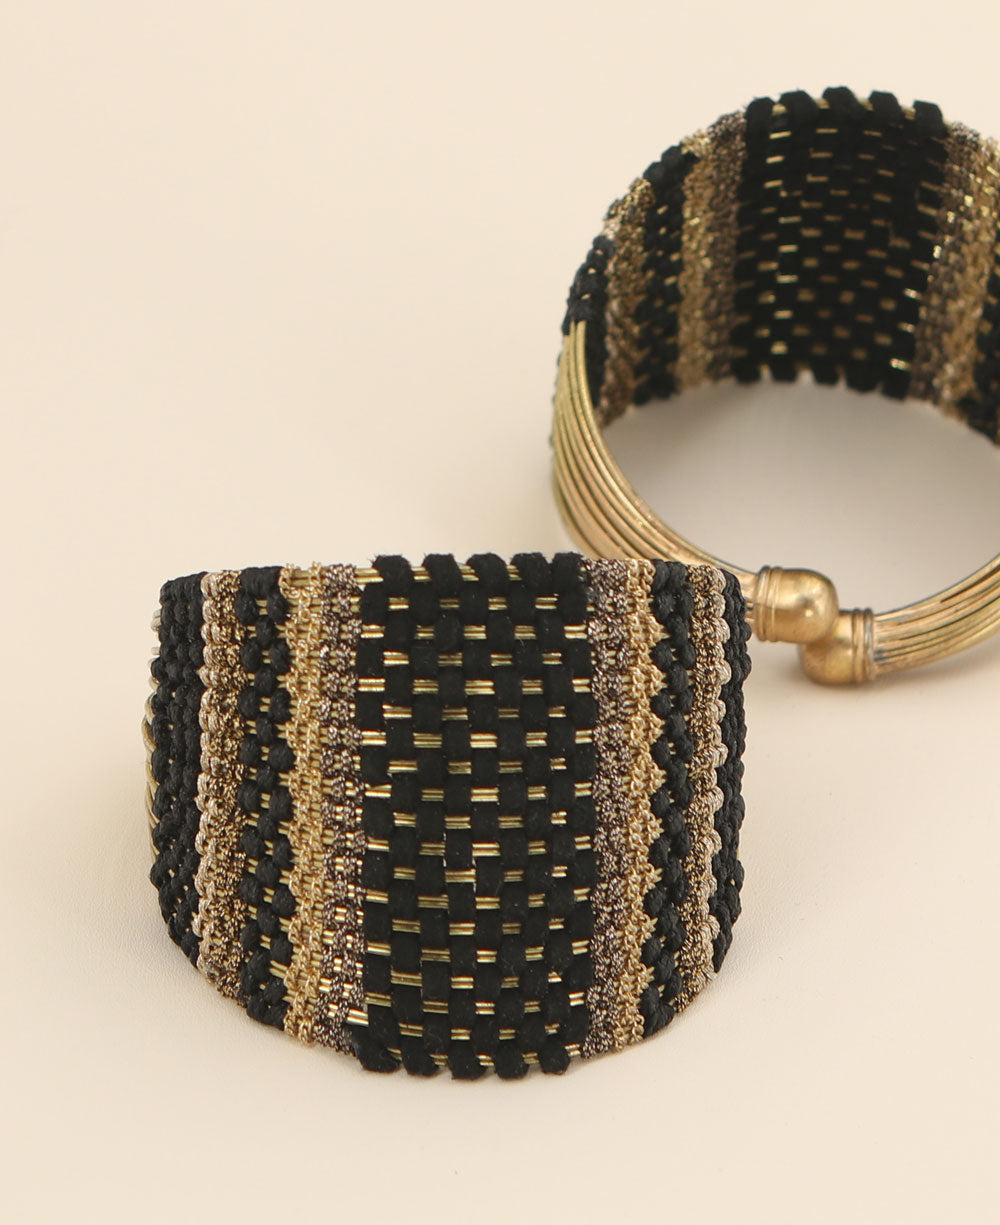 Woven Bracelets